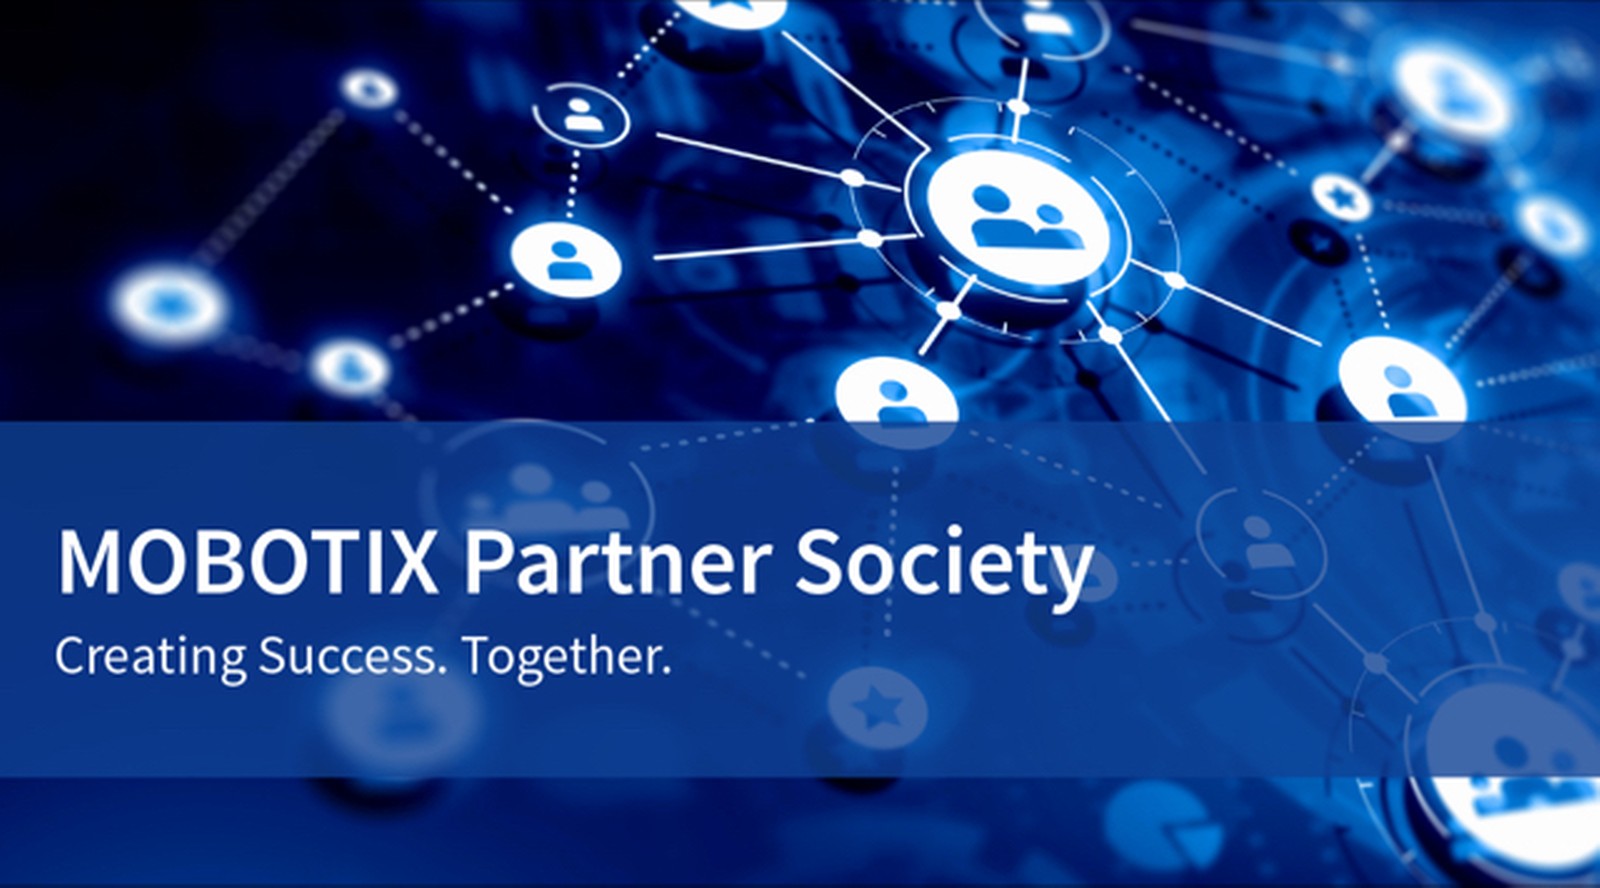 Ziel des neuen Partnerprogramms Mobotix Partner Society ist es, durch gemeinsame Innovationen mit Firmenpartnern sichere Gesamtlösungen zu entwickeln. 